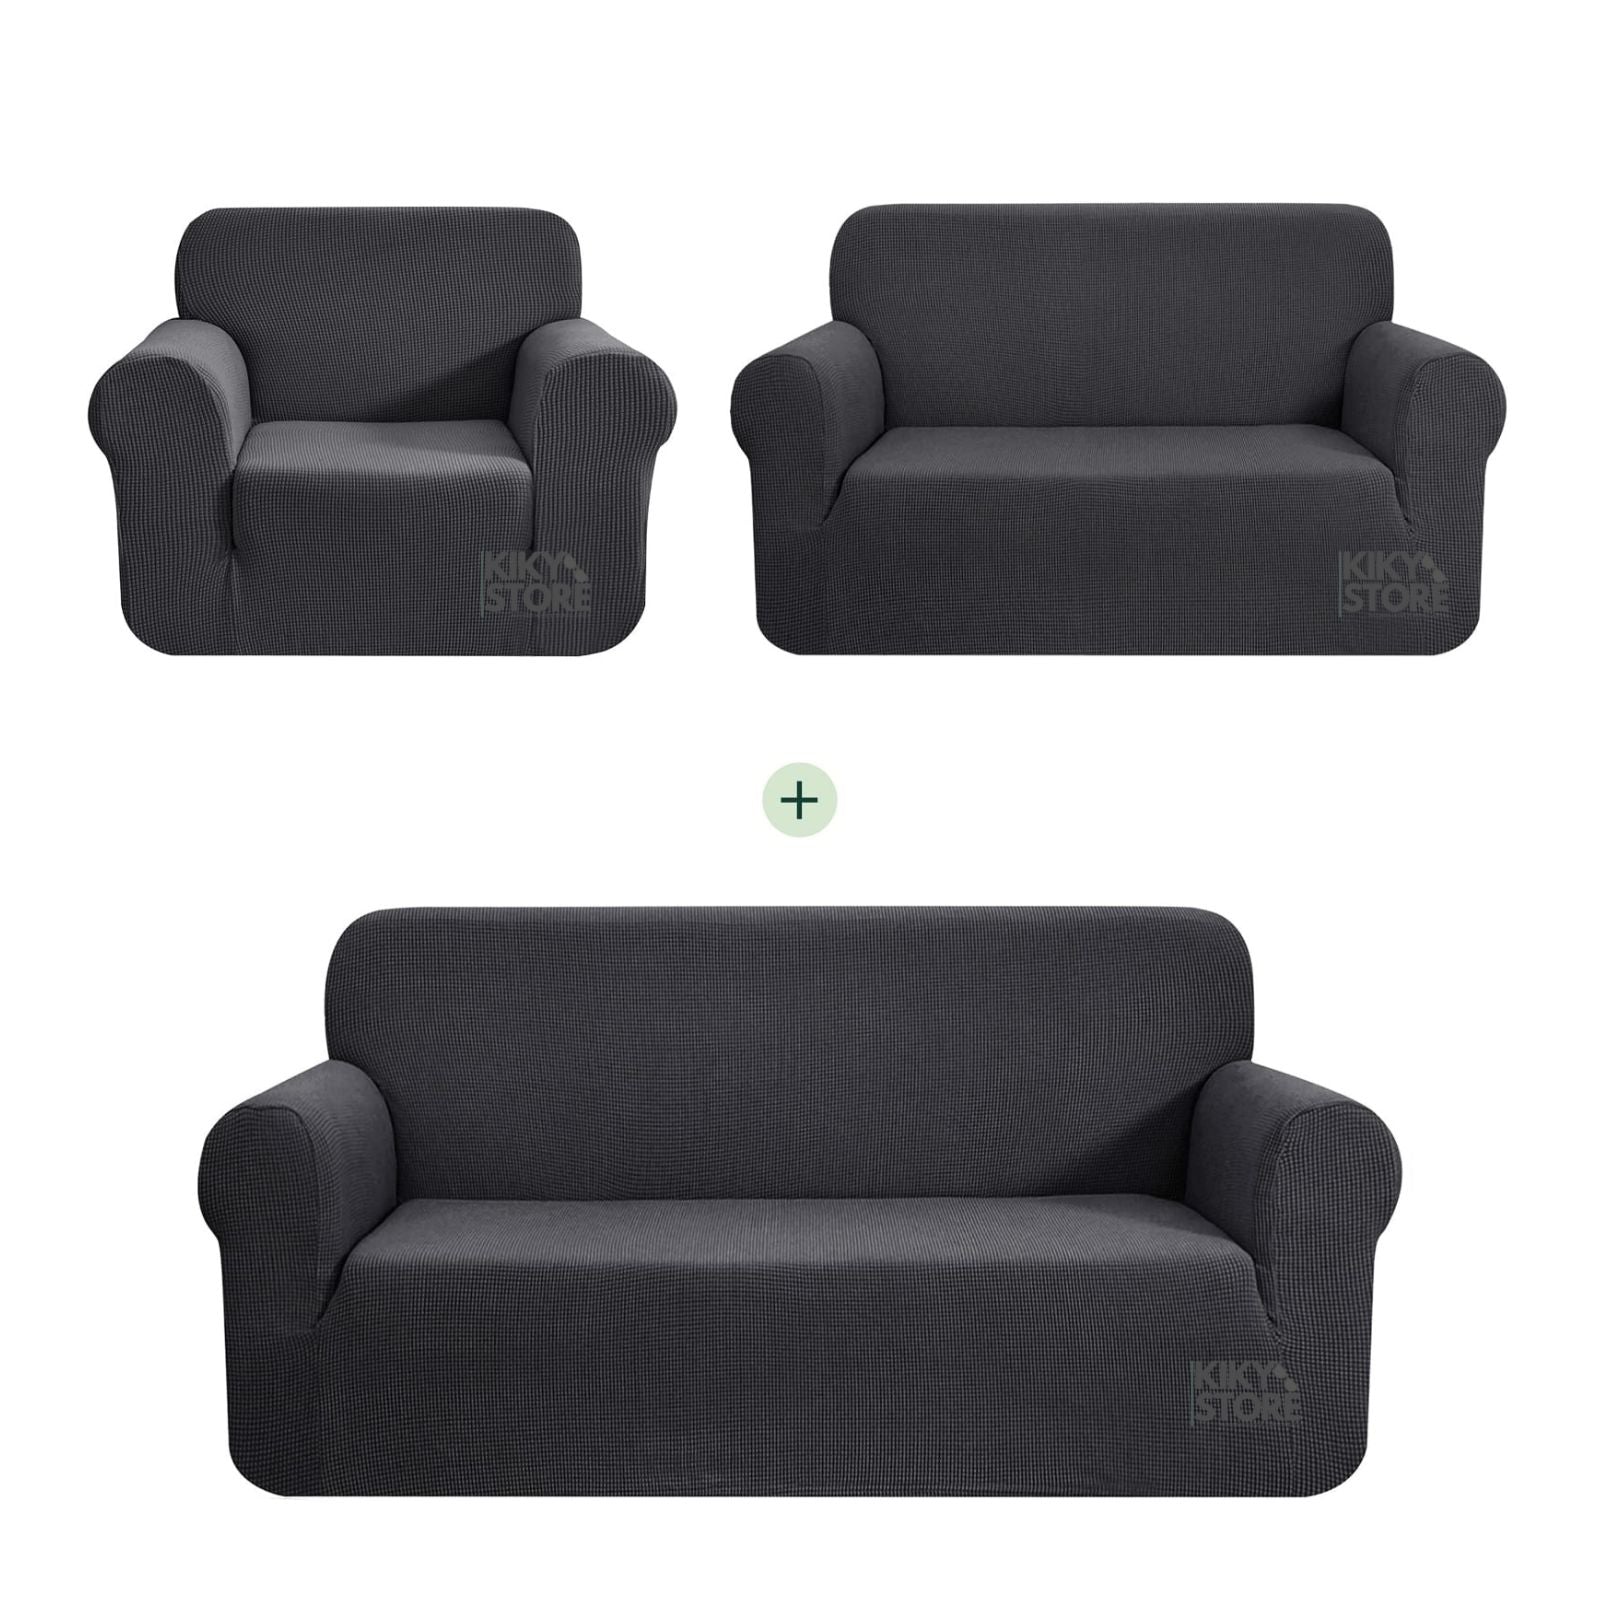 Komplet elastične navlake za trosjed ,dvosjed i fotelju-SITNI UZORAK KIKY STORE 